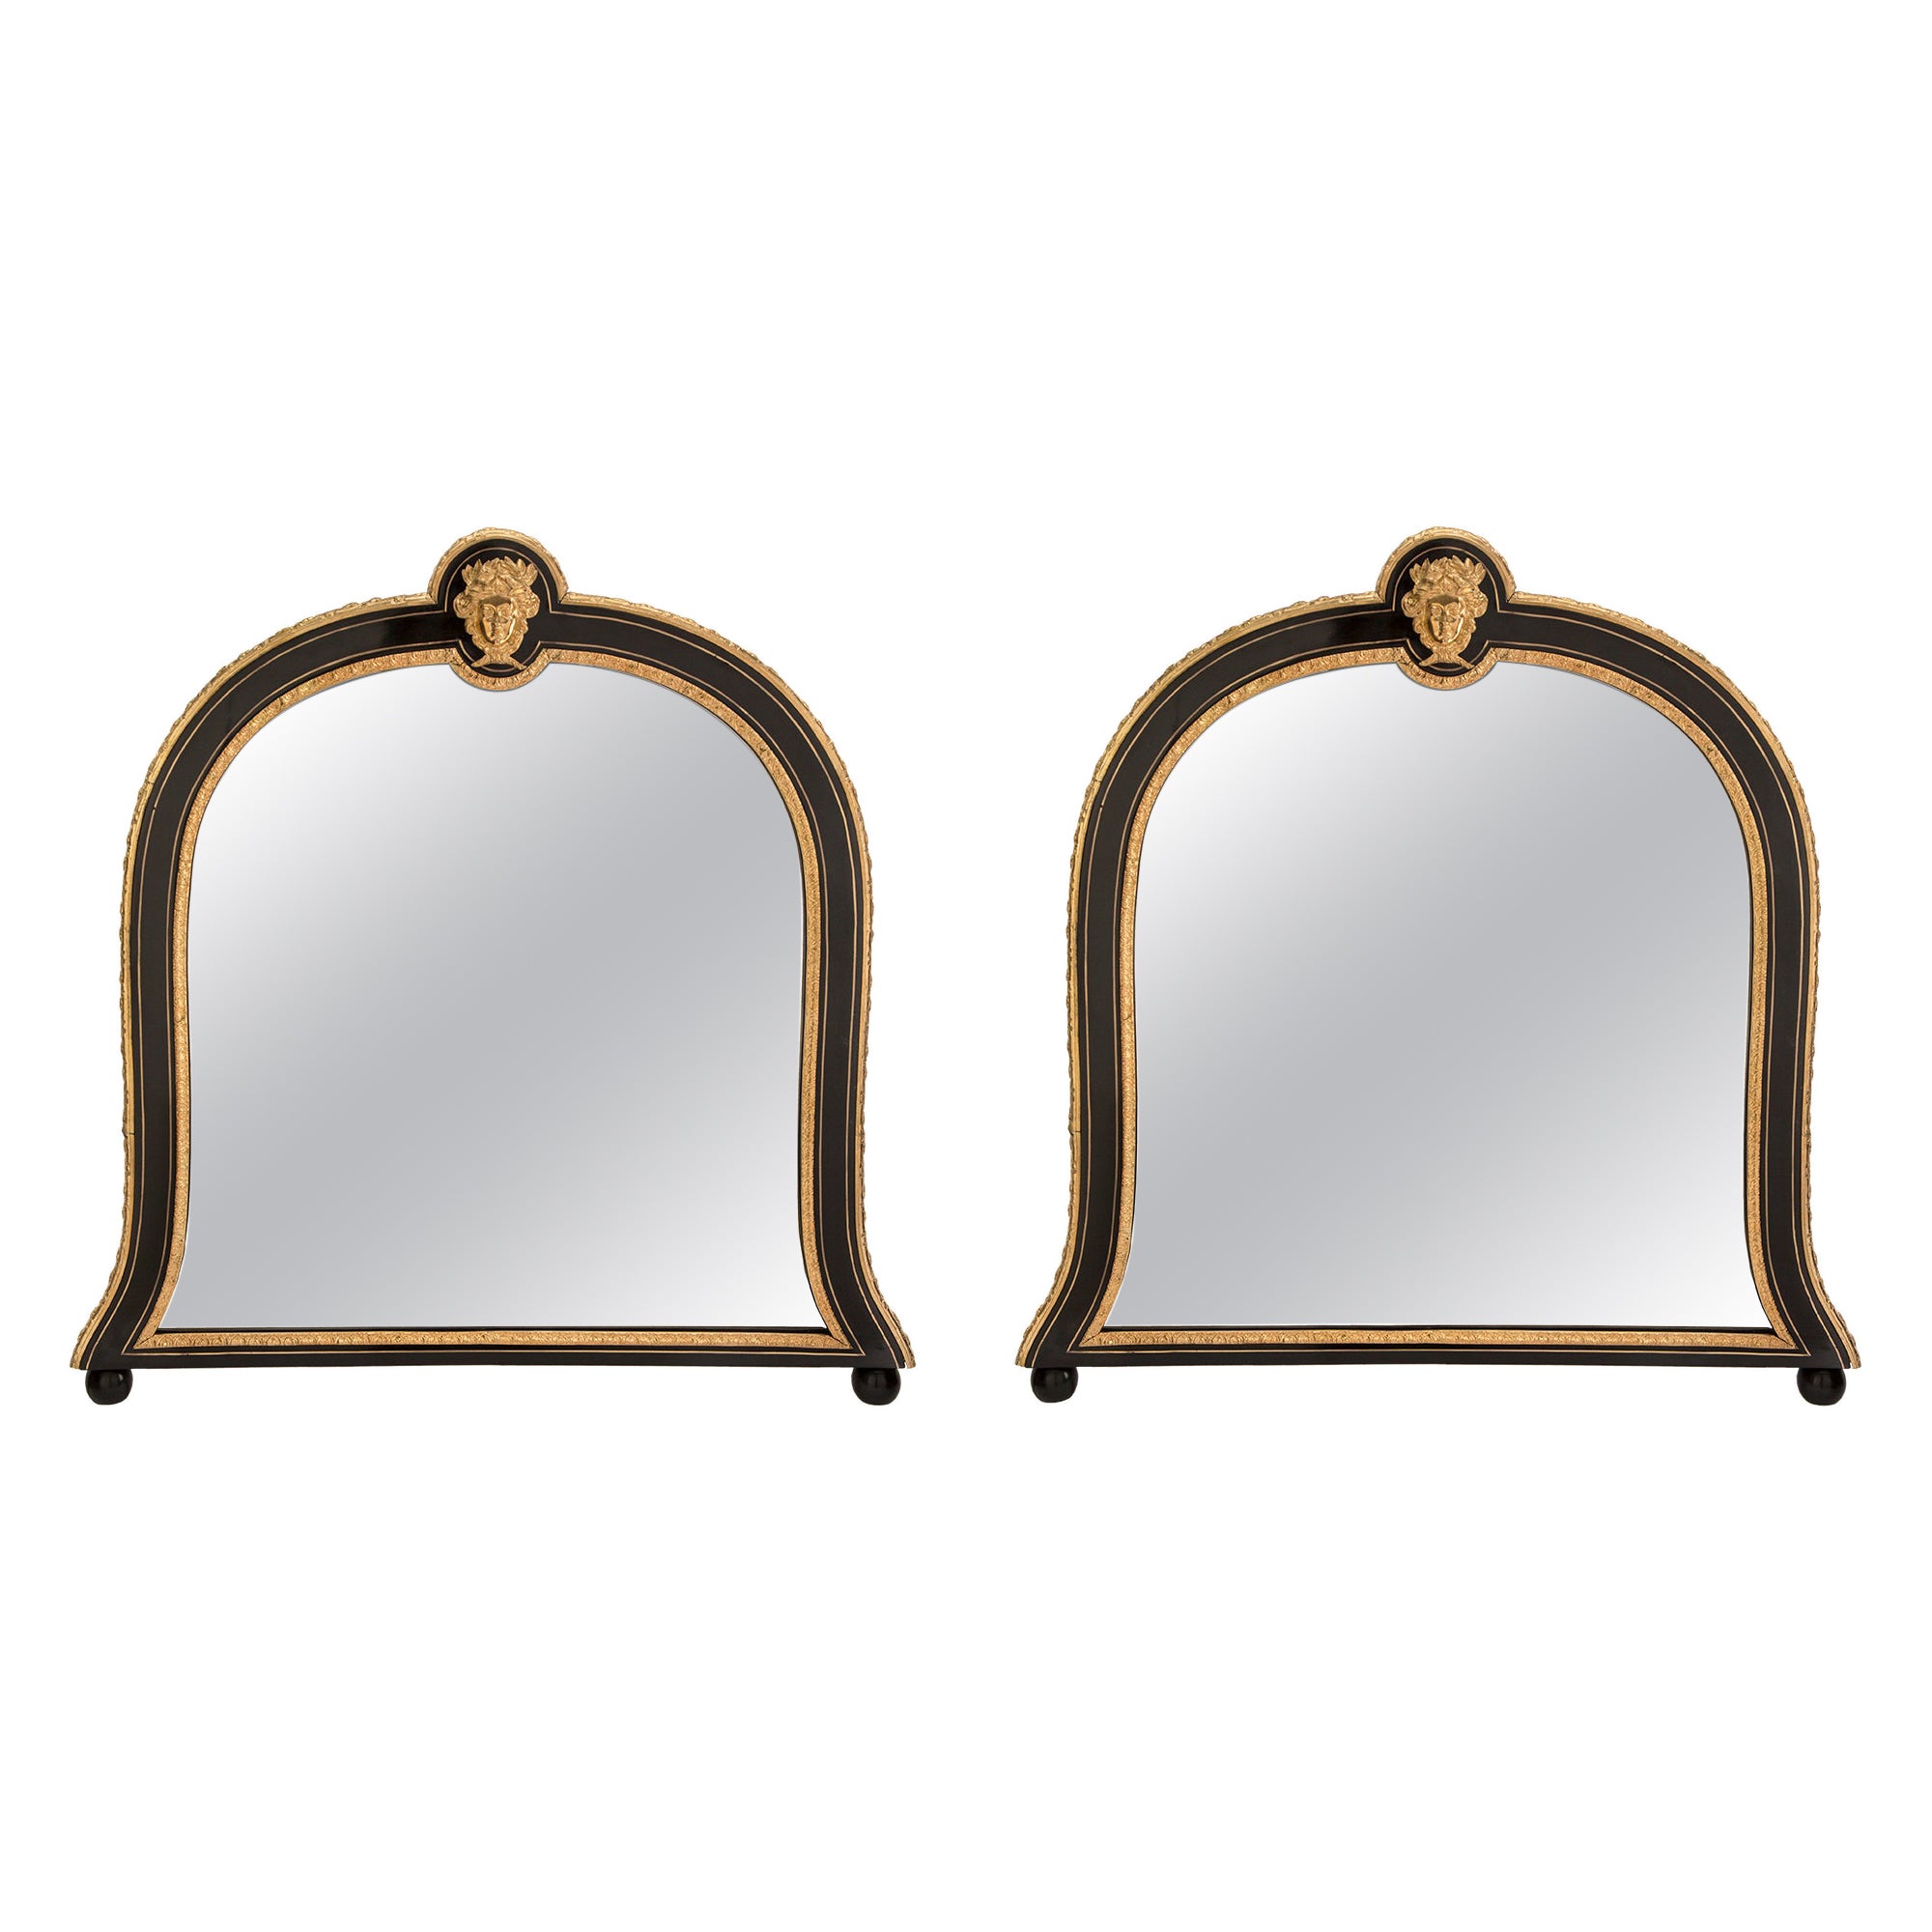 Paire de miroirs français montés du 19ème siècle d'époque Napoléon III et de style Louis XIV